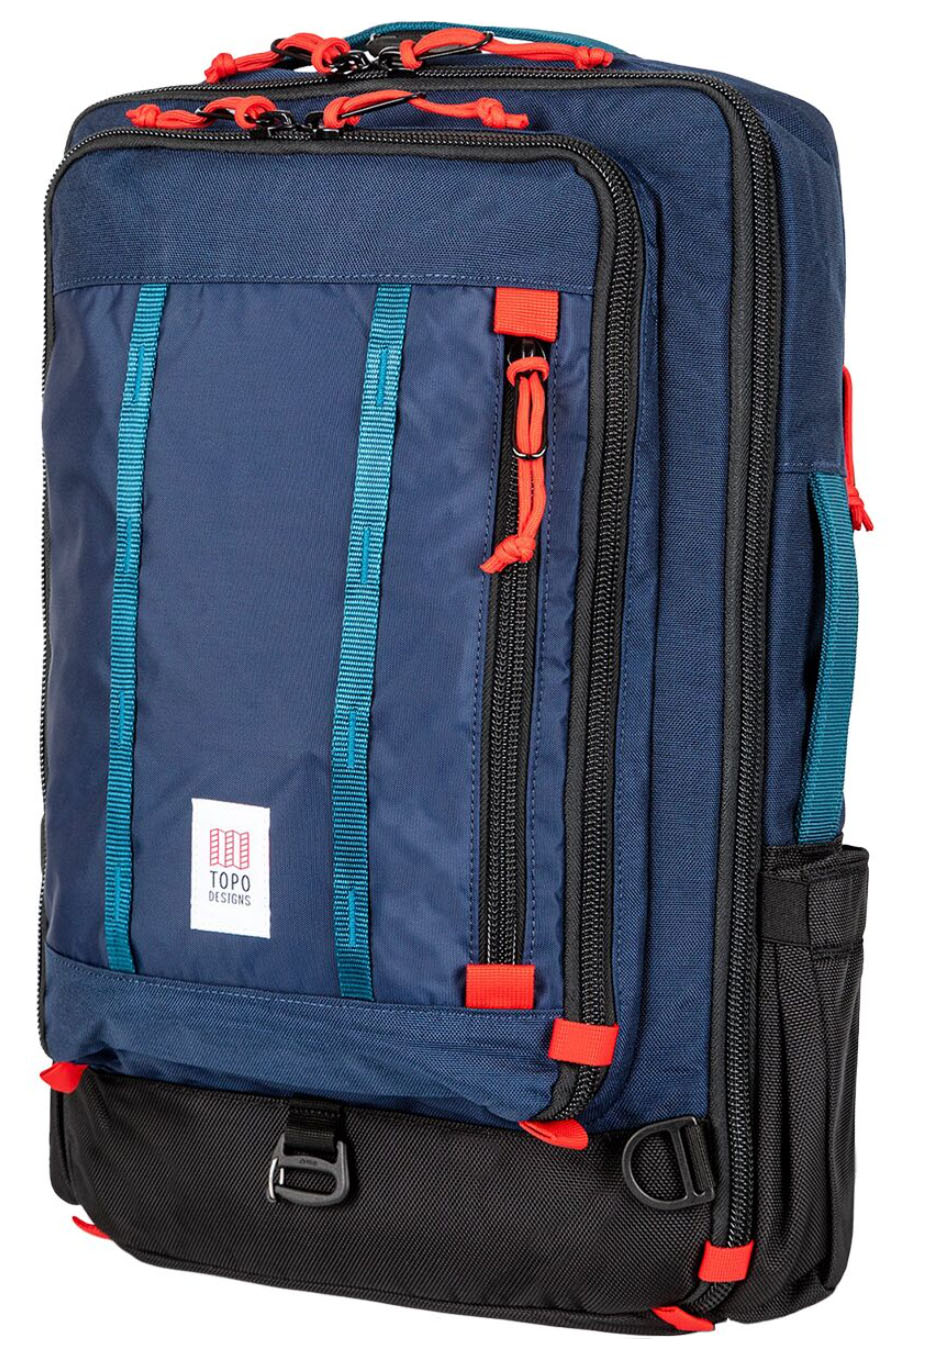 Topo Designs Global Travel Bag 30L travel backpack